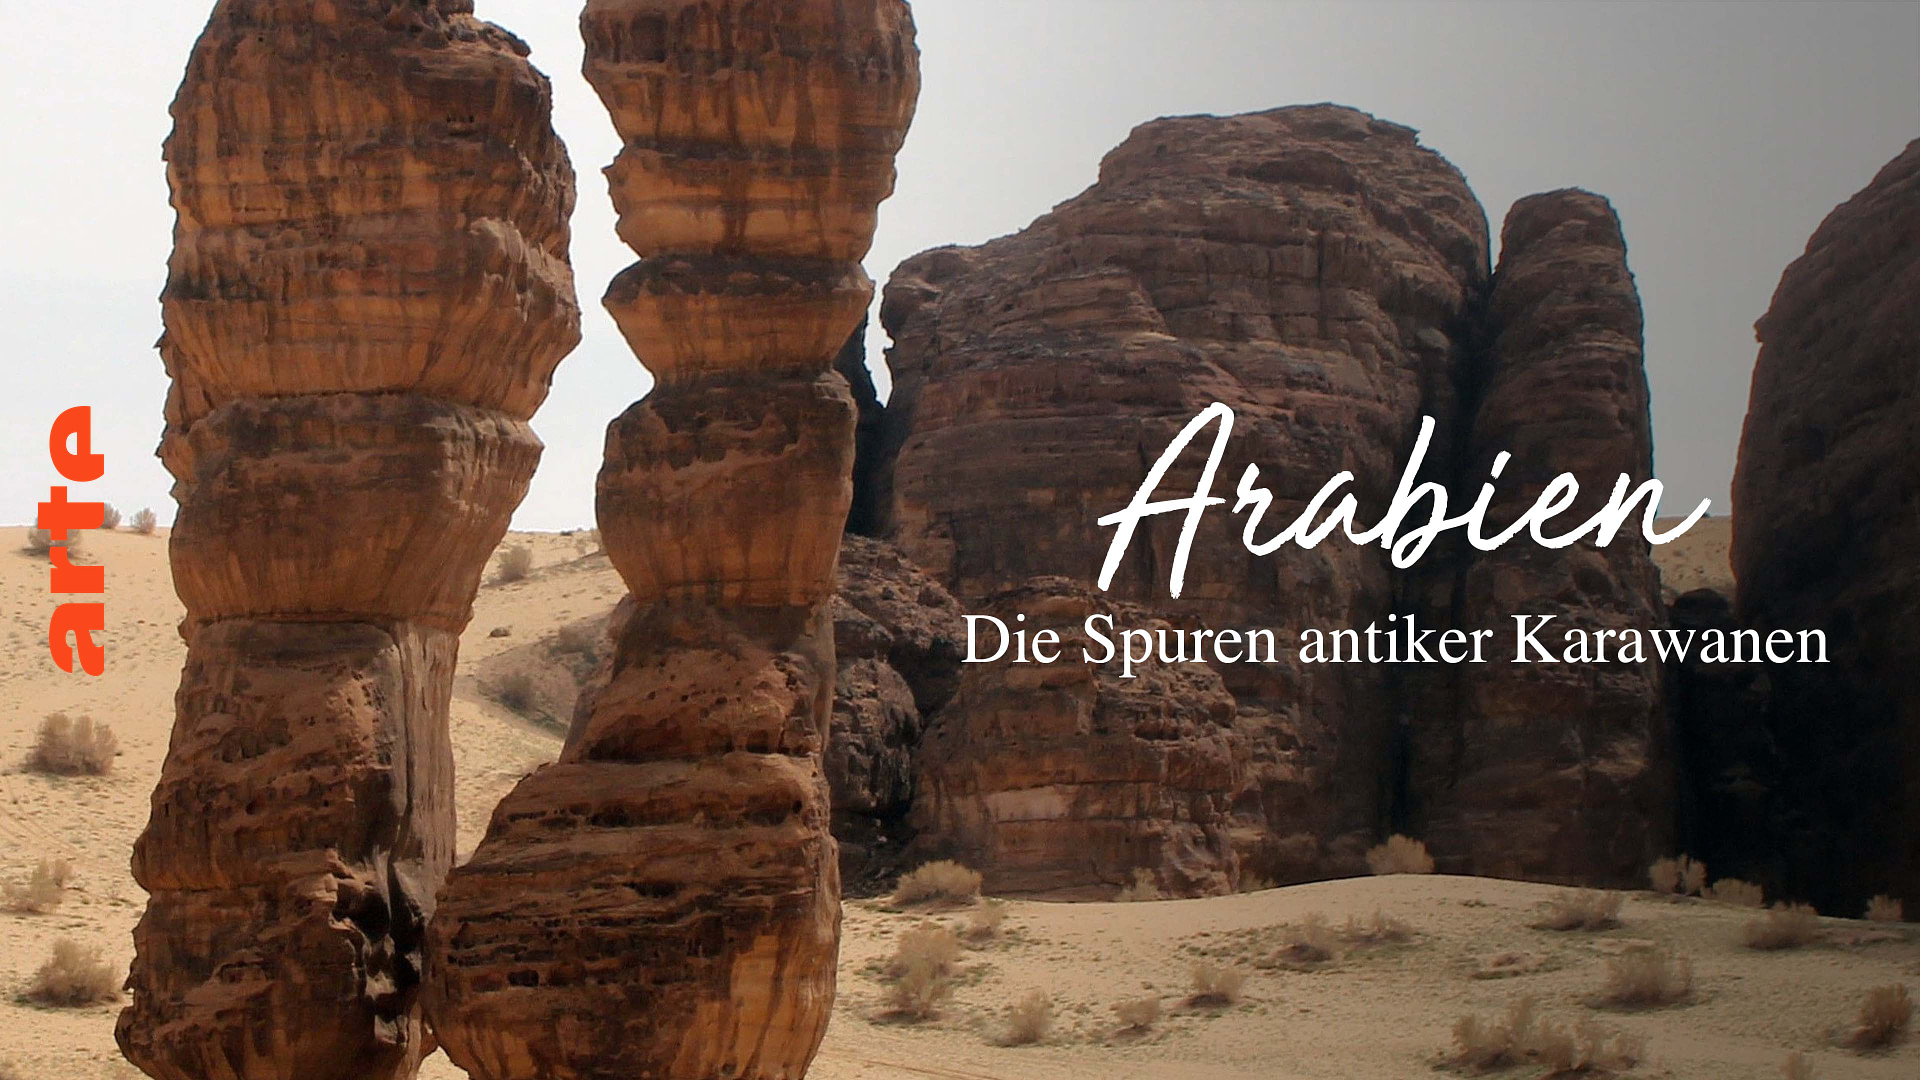 Arabien: Auf den Spuren antiker Karawanen